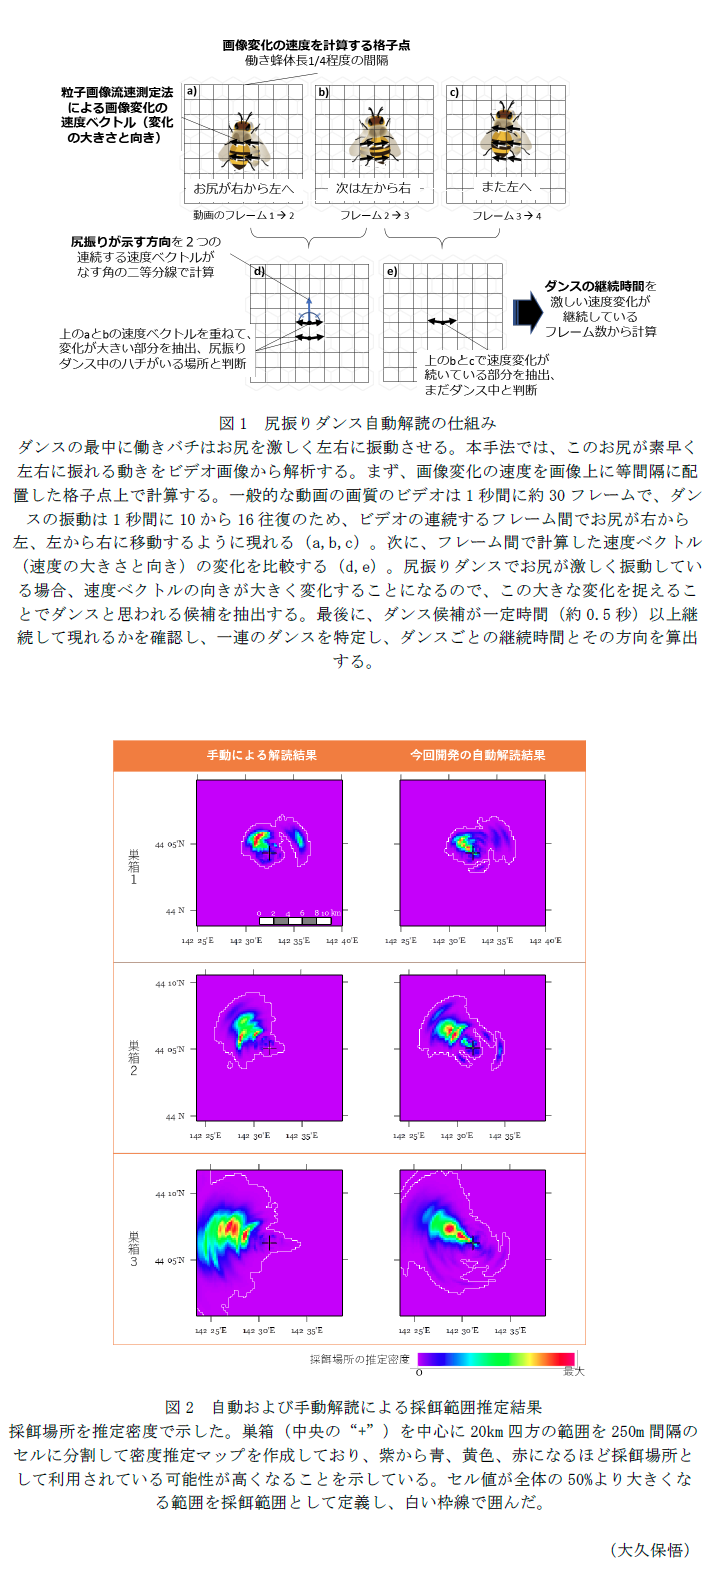 図1 尻振りダンス自動解読の仕組み,図2 自動および手動解読による採餌範囲推定結果